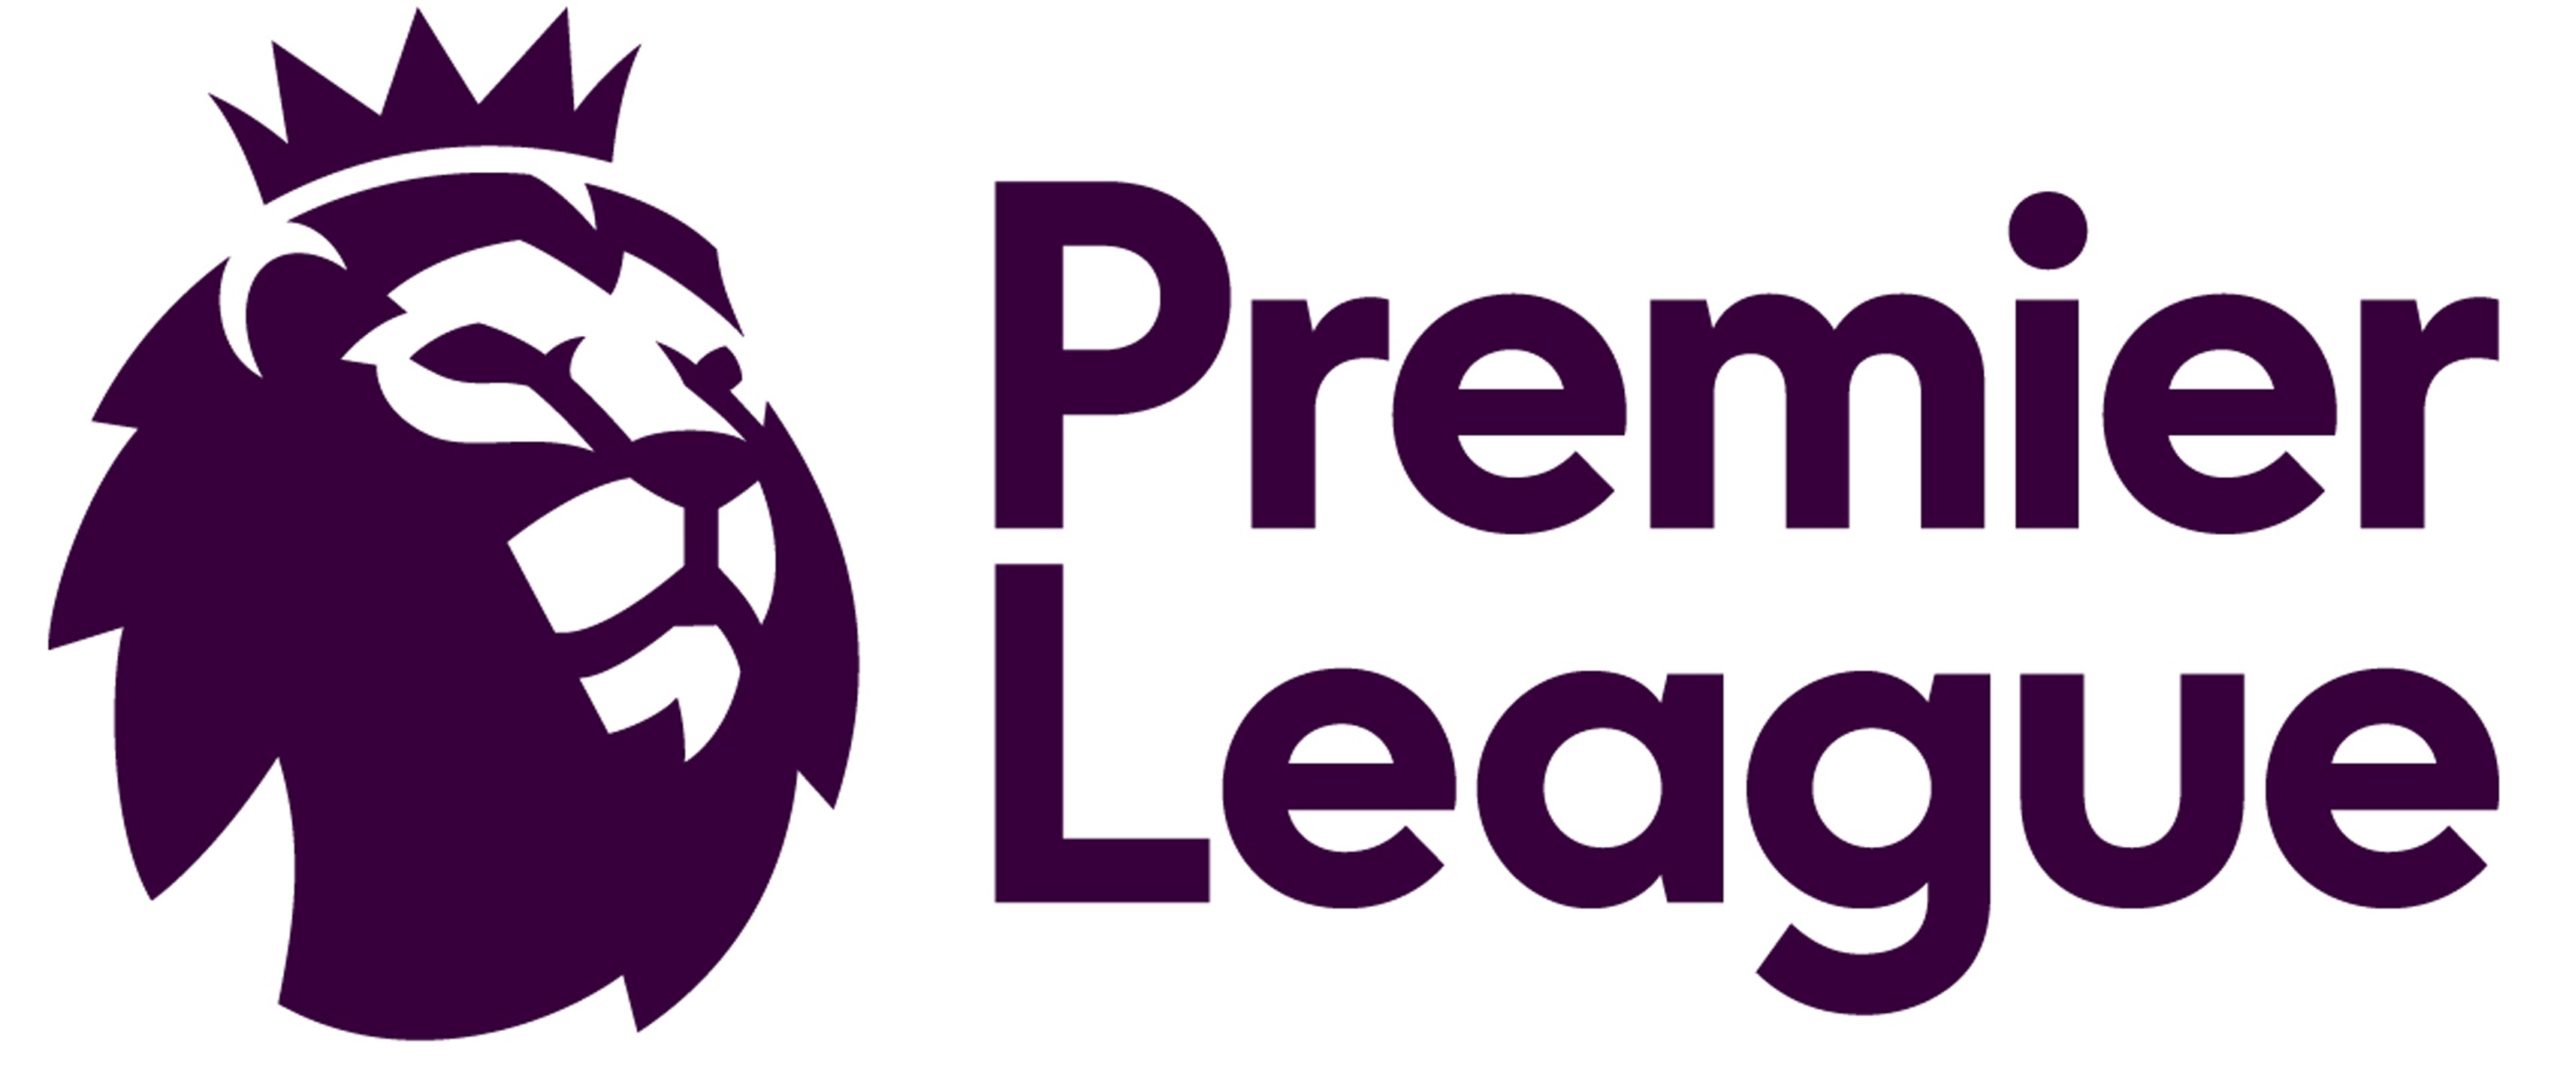 English premier league